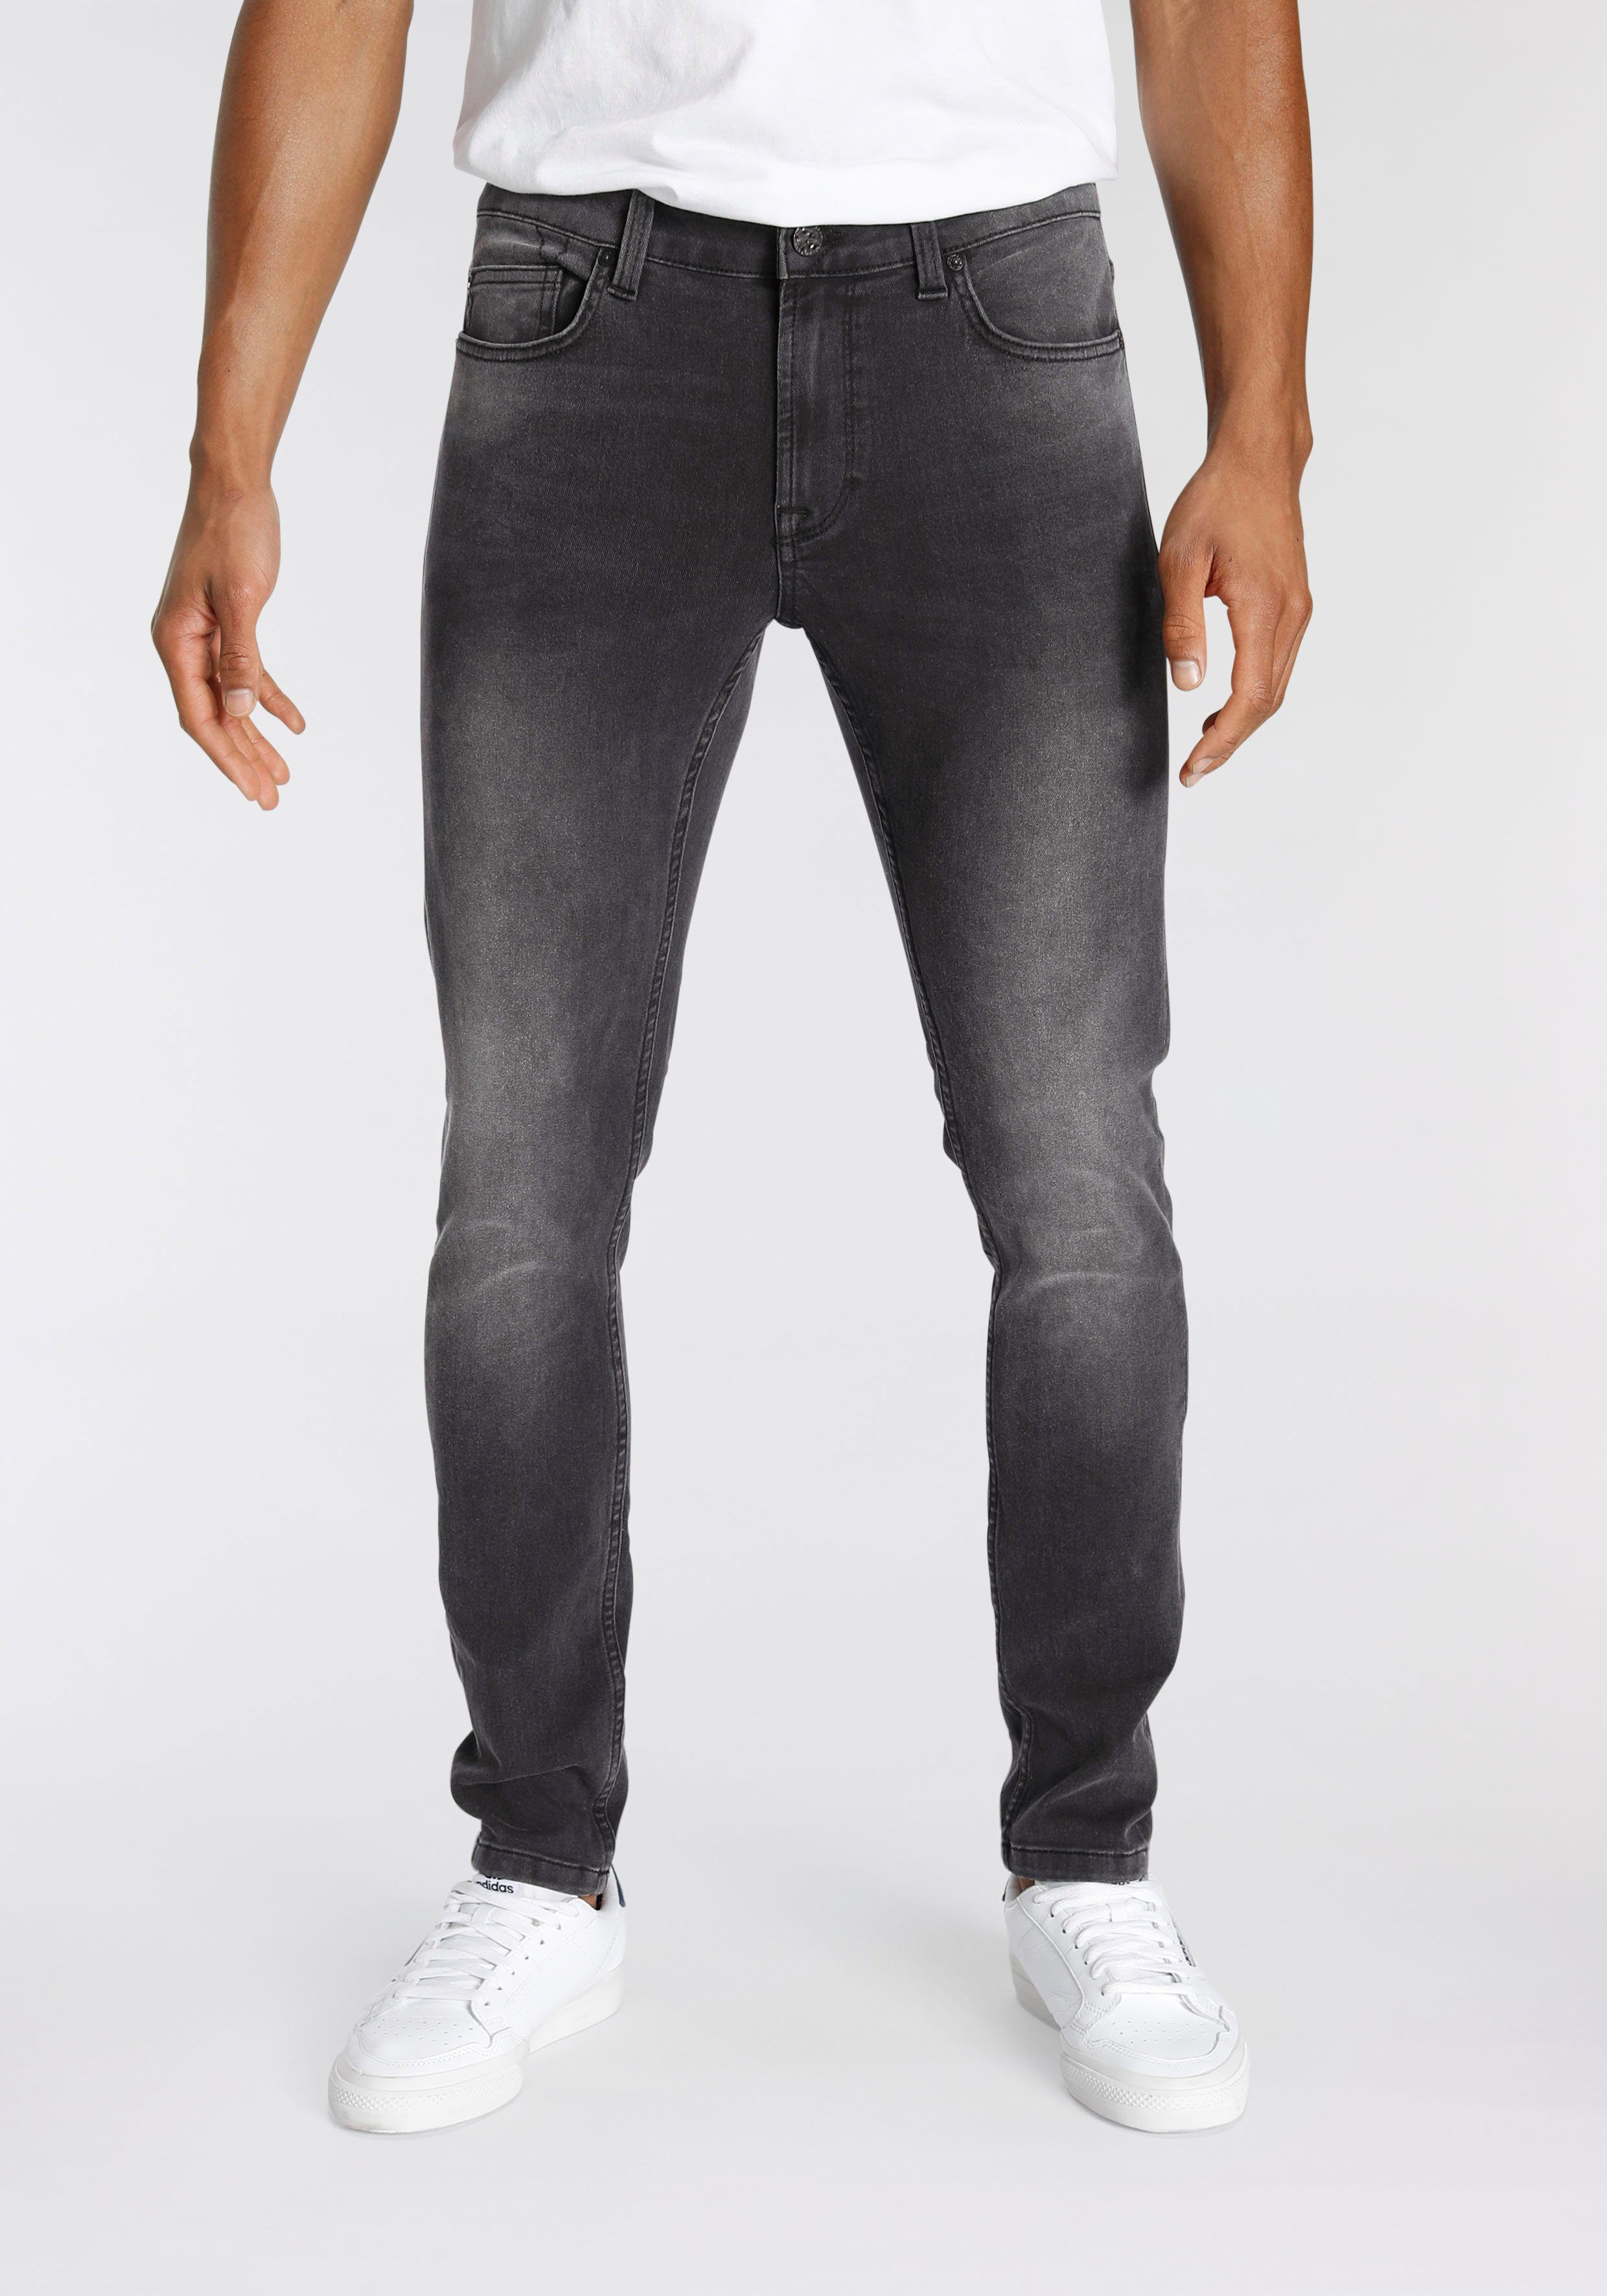 Günstige Herren Jeans kaufen » Bis zu 40% Rabatt | OTTO